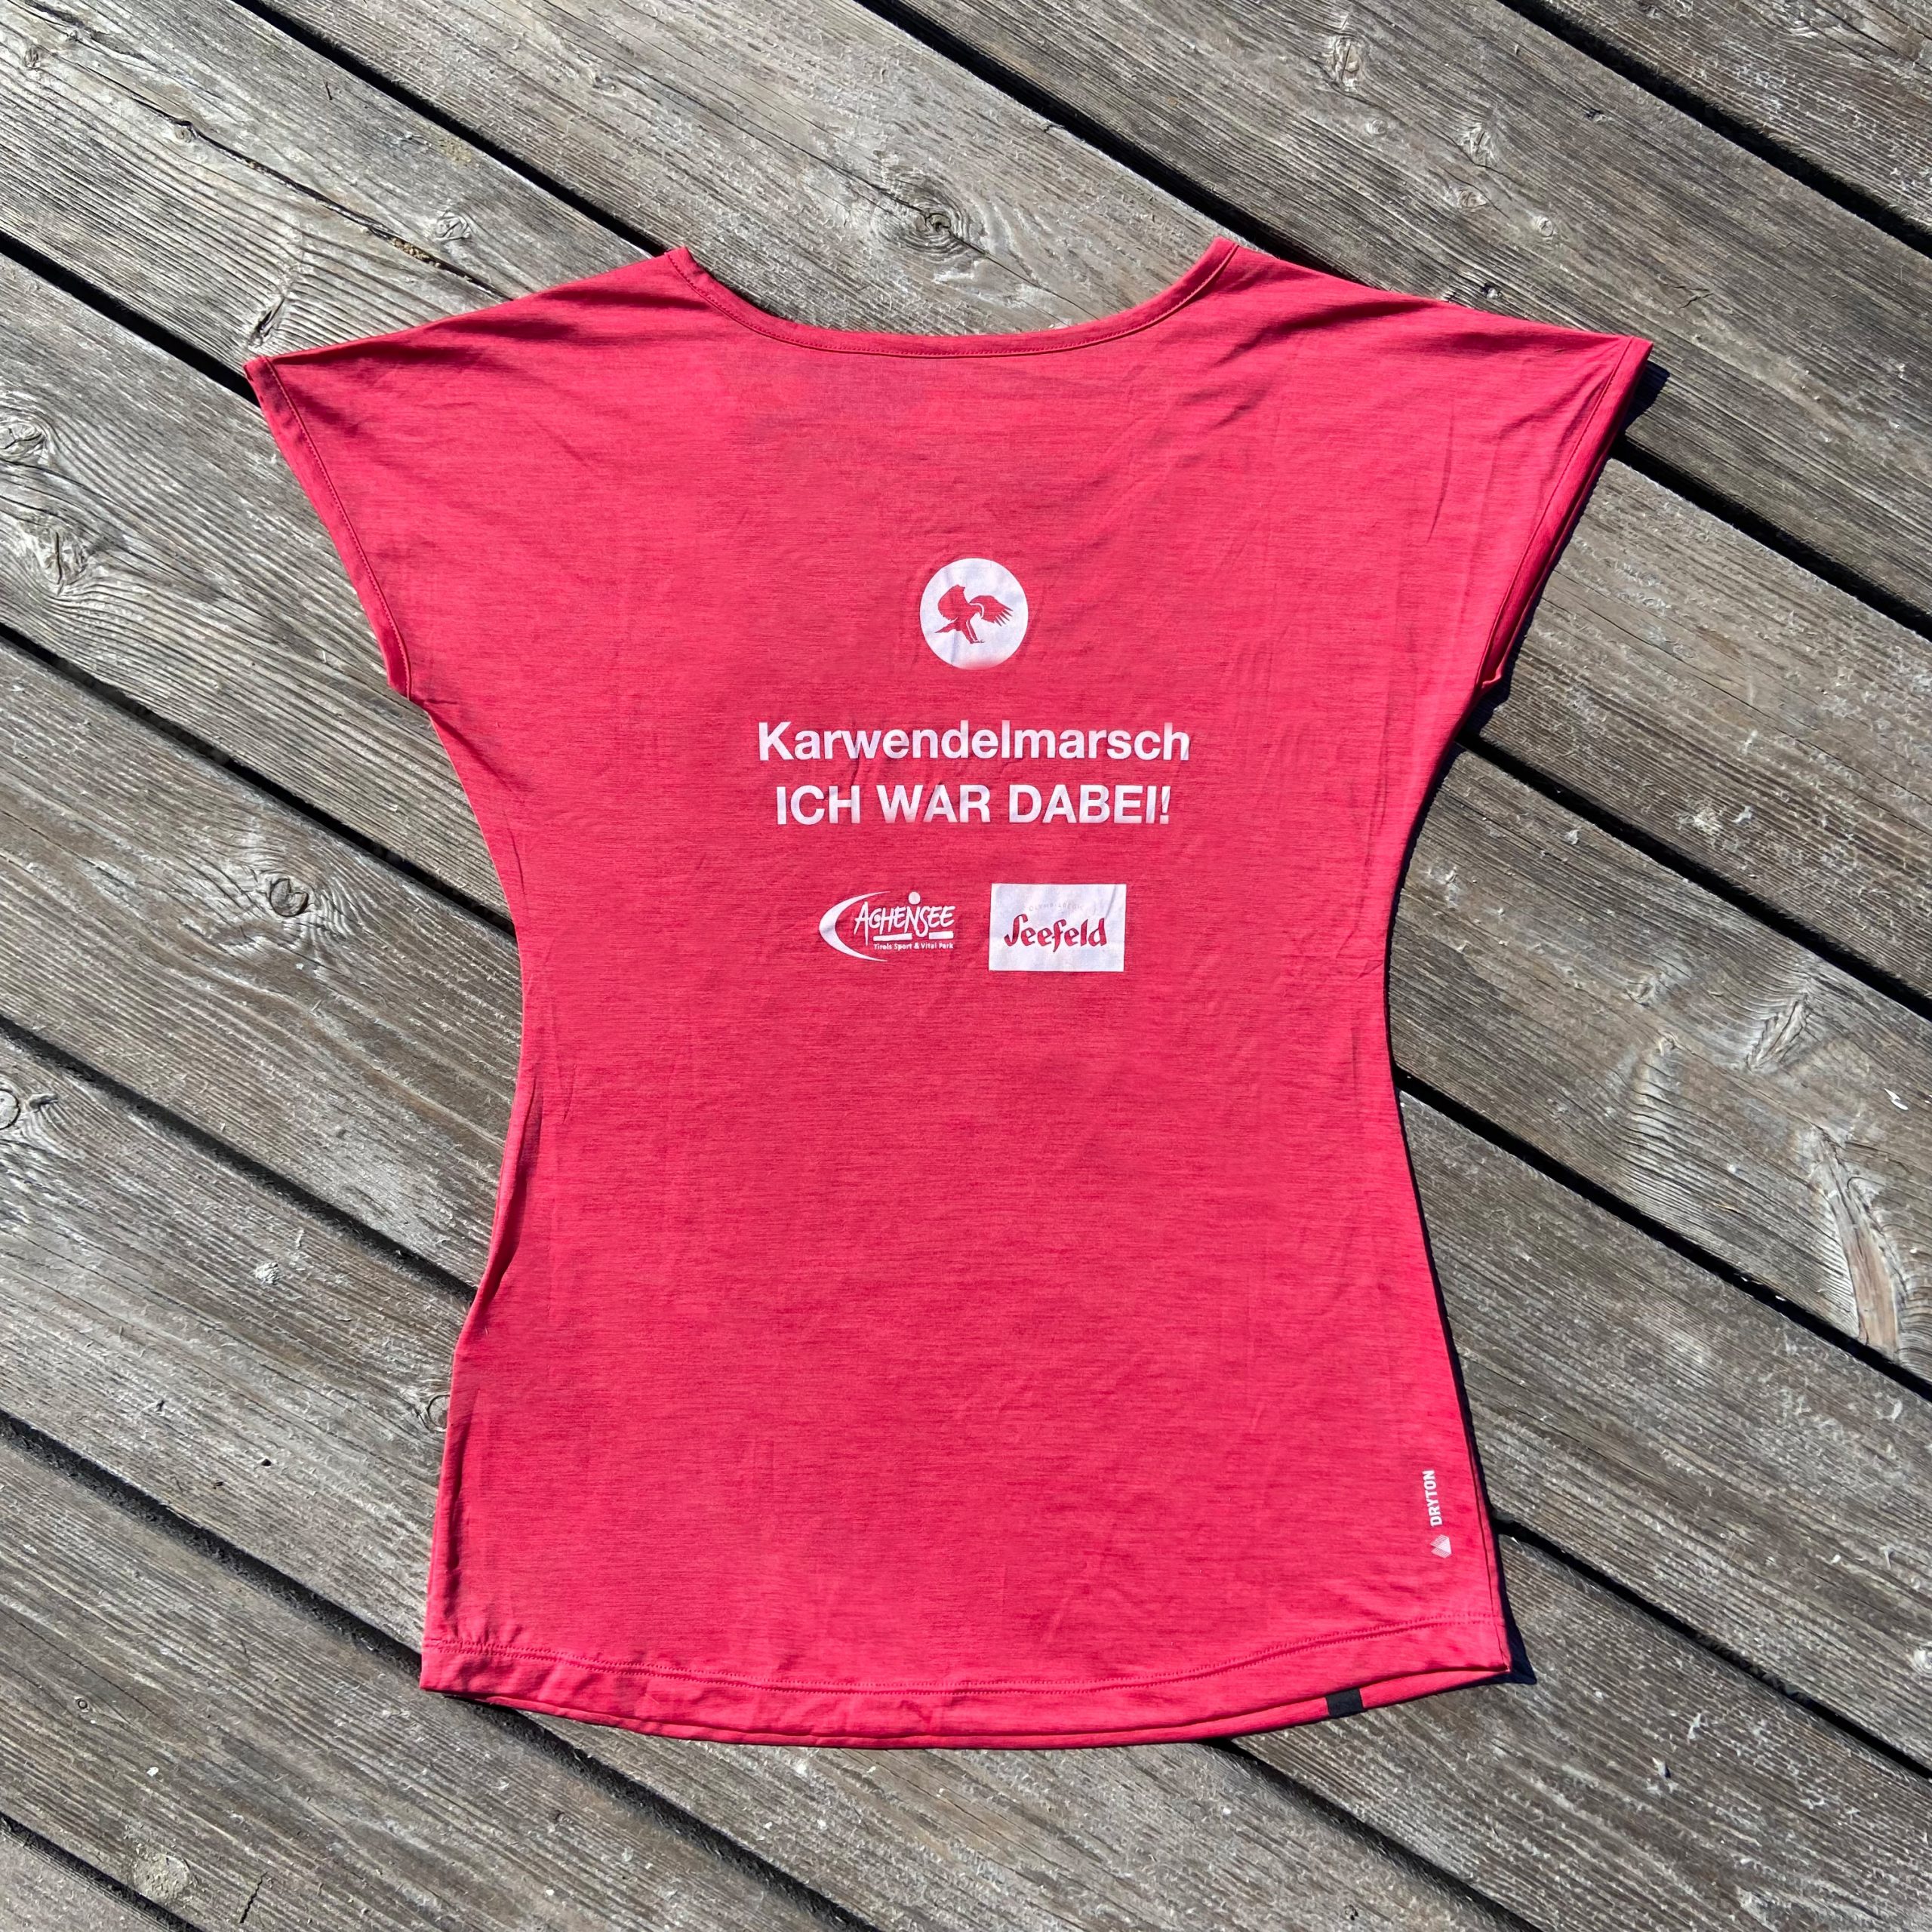 NEW IN, Karwendelmarsch T-Shirts